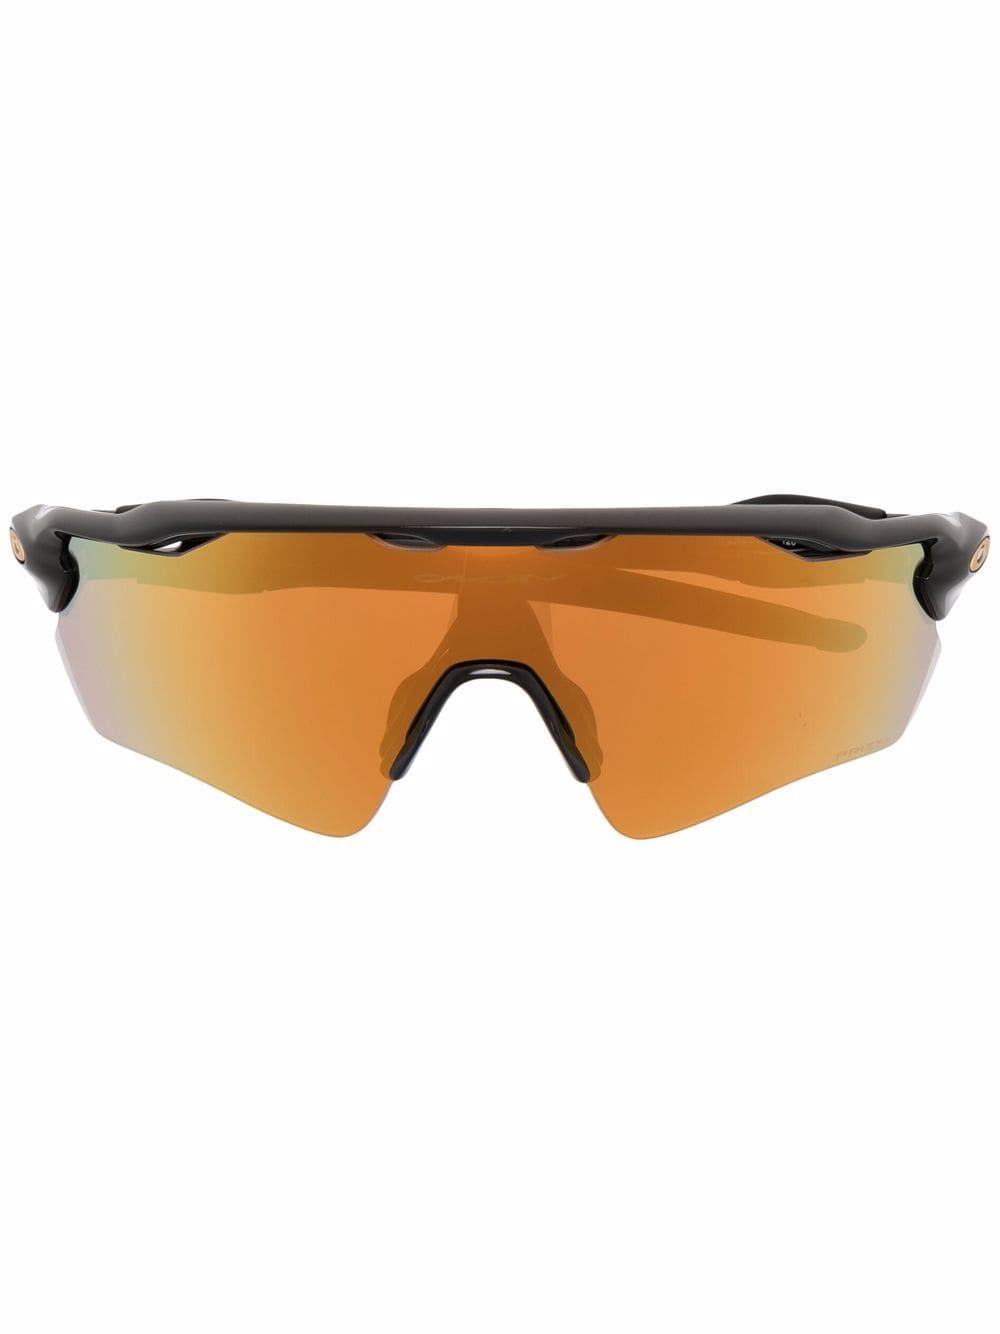 Oakley Radar EV Path Sunglasses - Farfetch